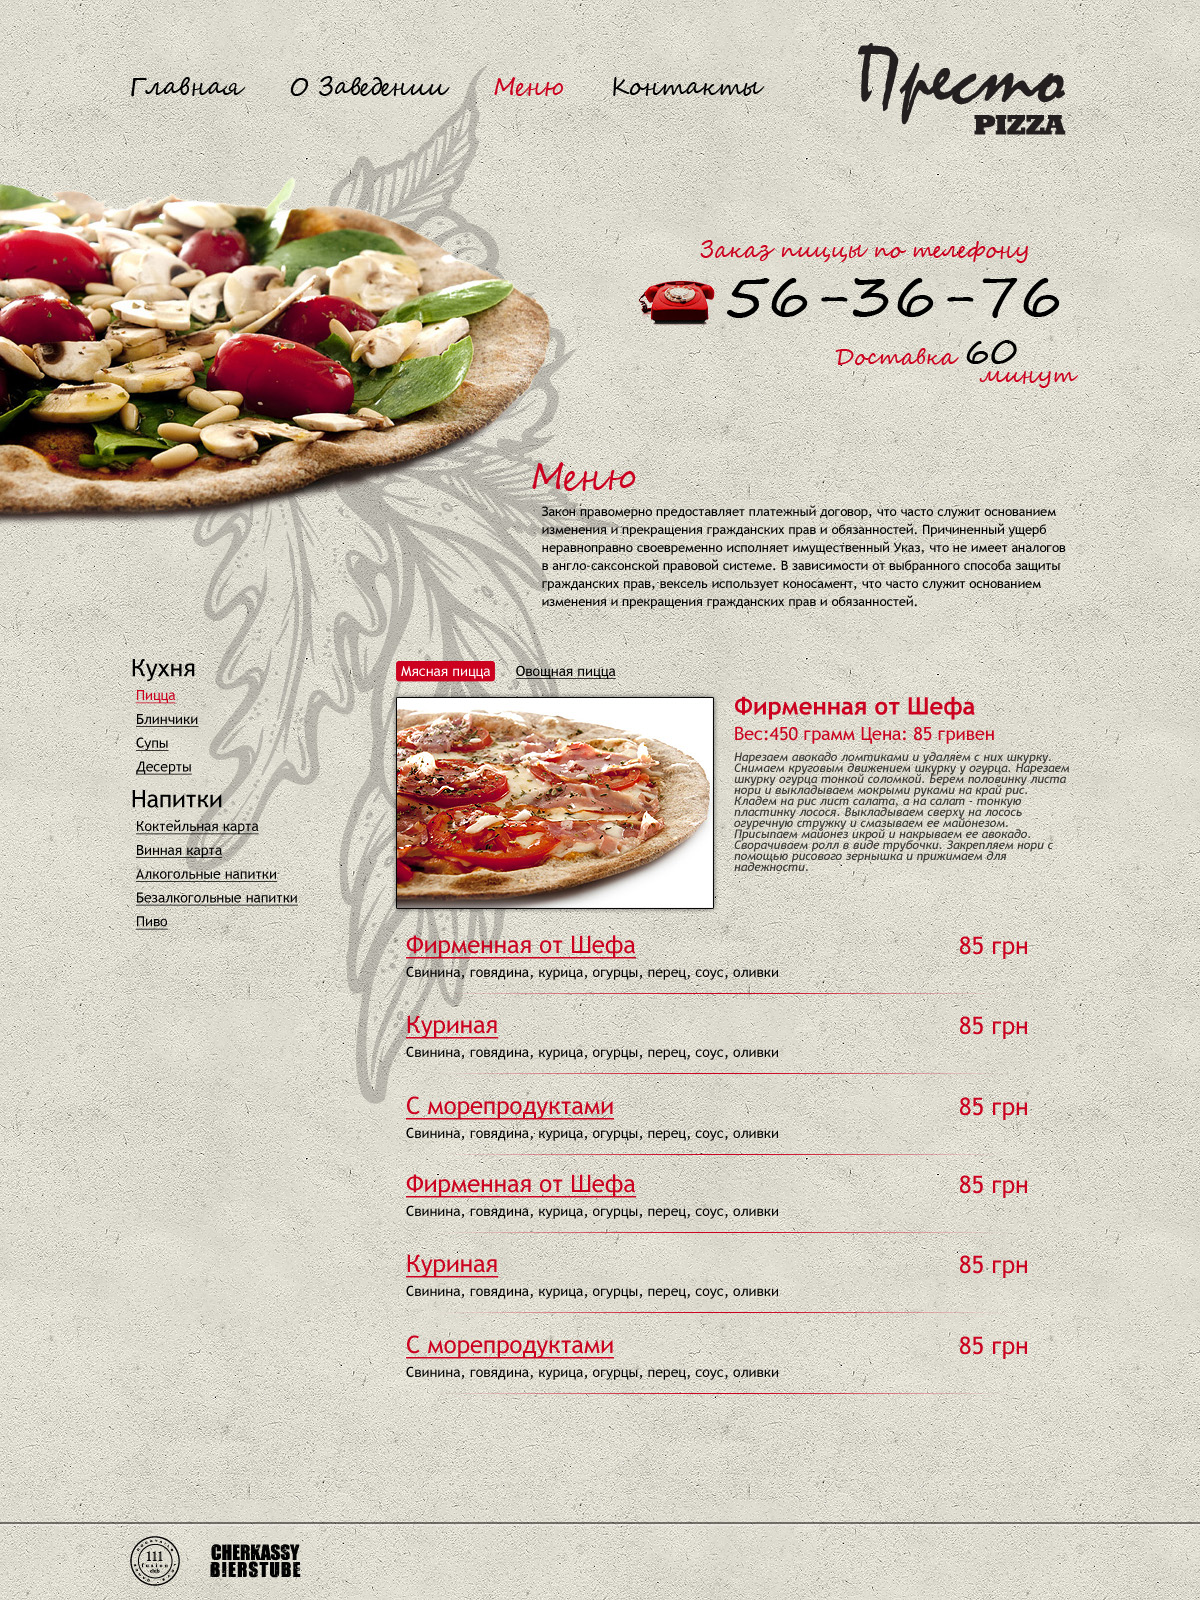 Престо - сайт для пиццерии